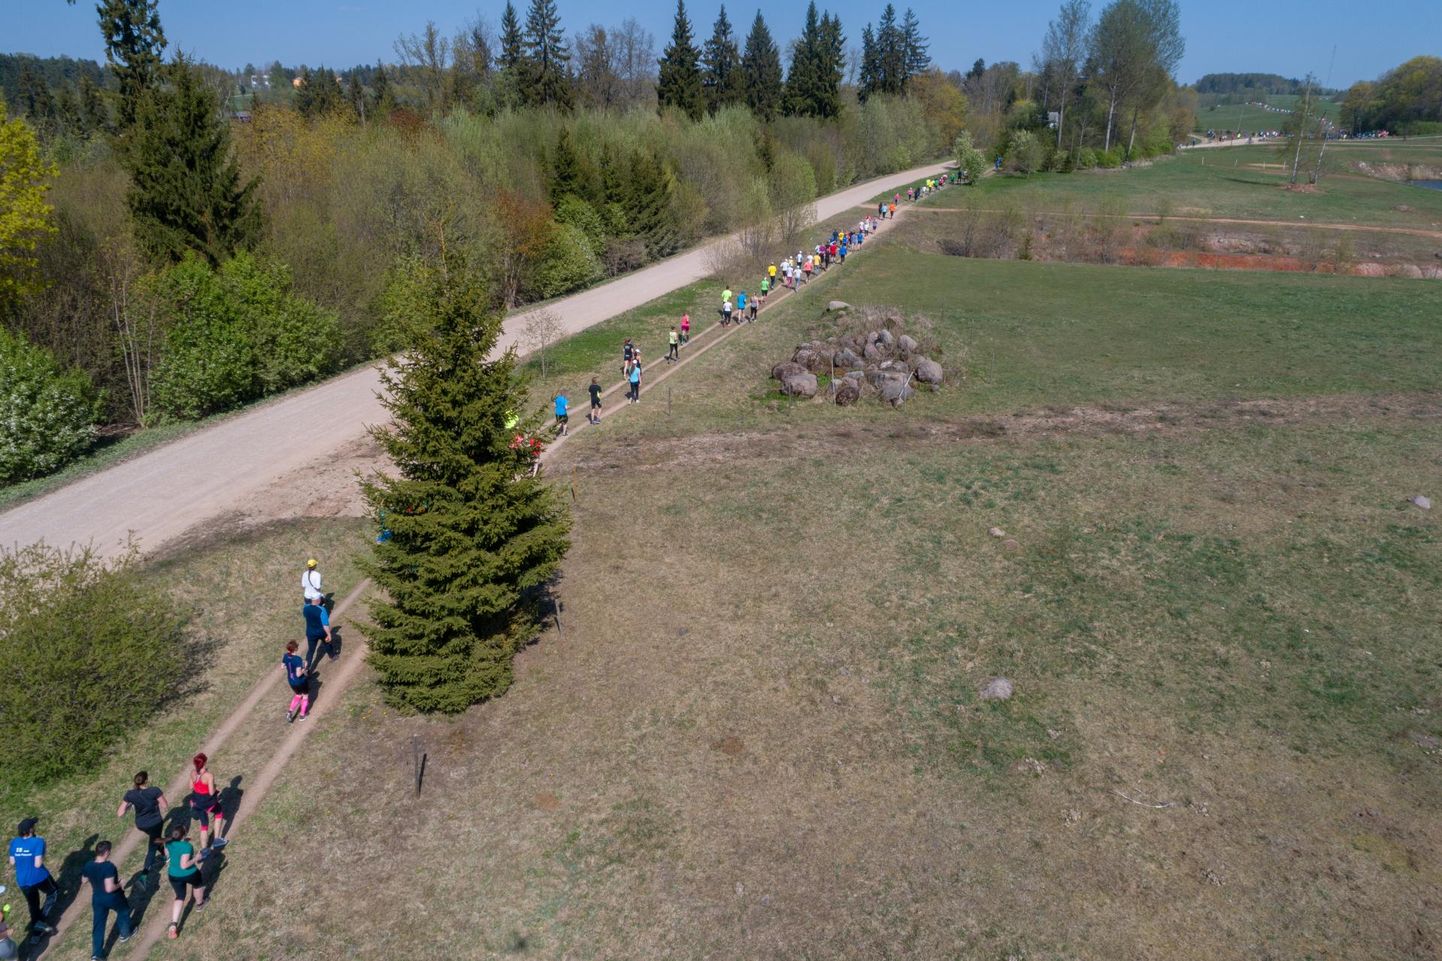 Iga aasta 1. mail asetleidev ümber Viljandi järve jooks on tõeline spordipidu. Tervisesportlastele on see rada tuttav ka järvejooksude ja kepikõndide sarjast.